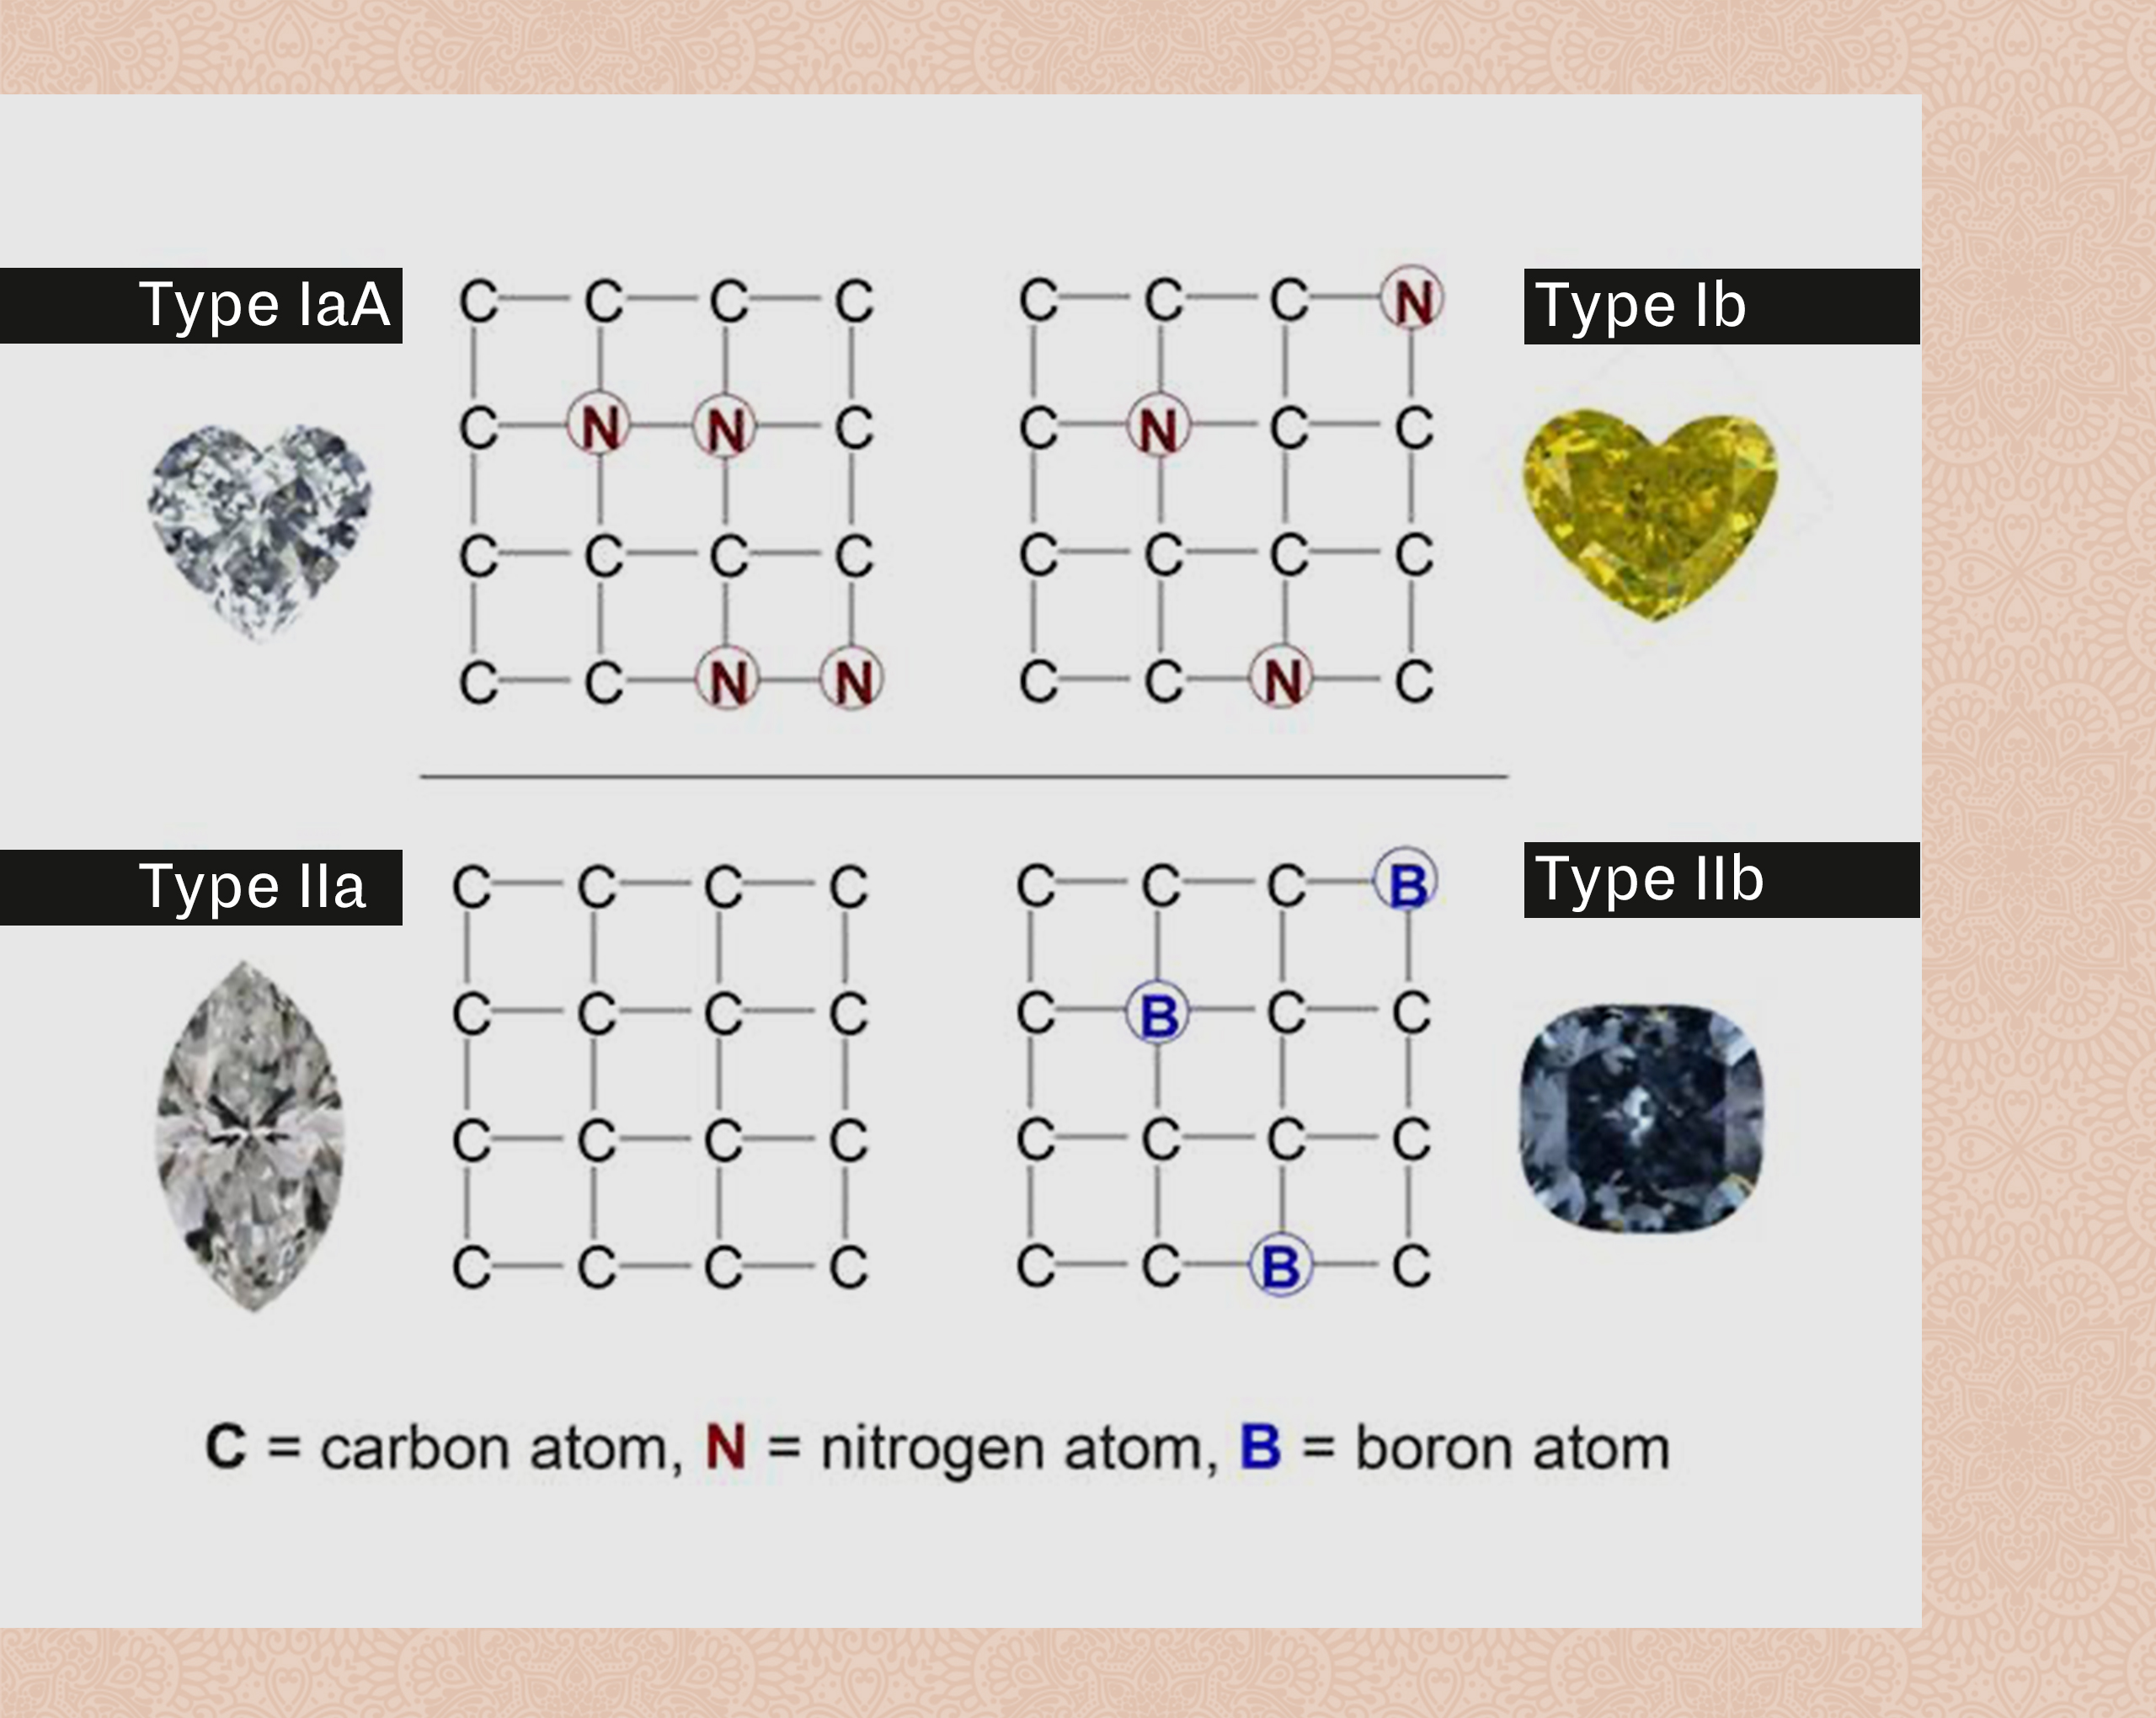 Types of diamonds
